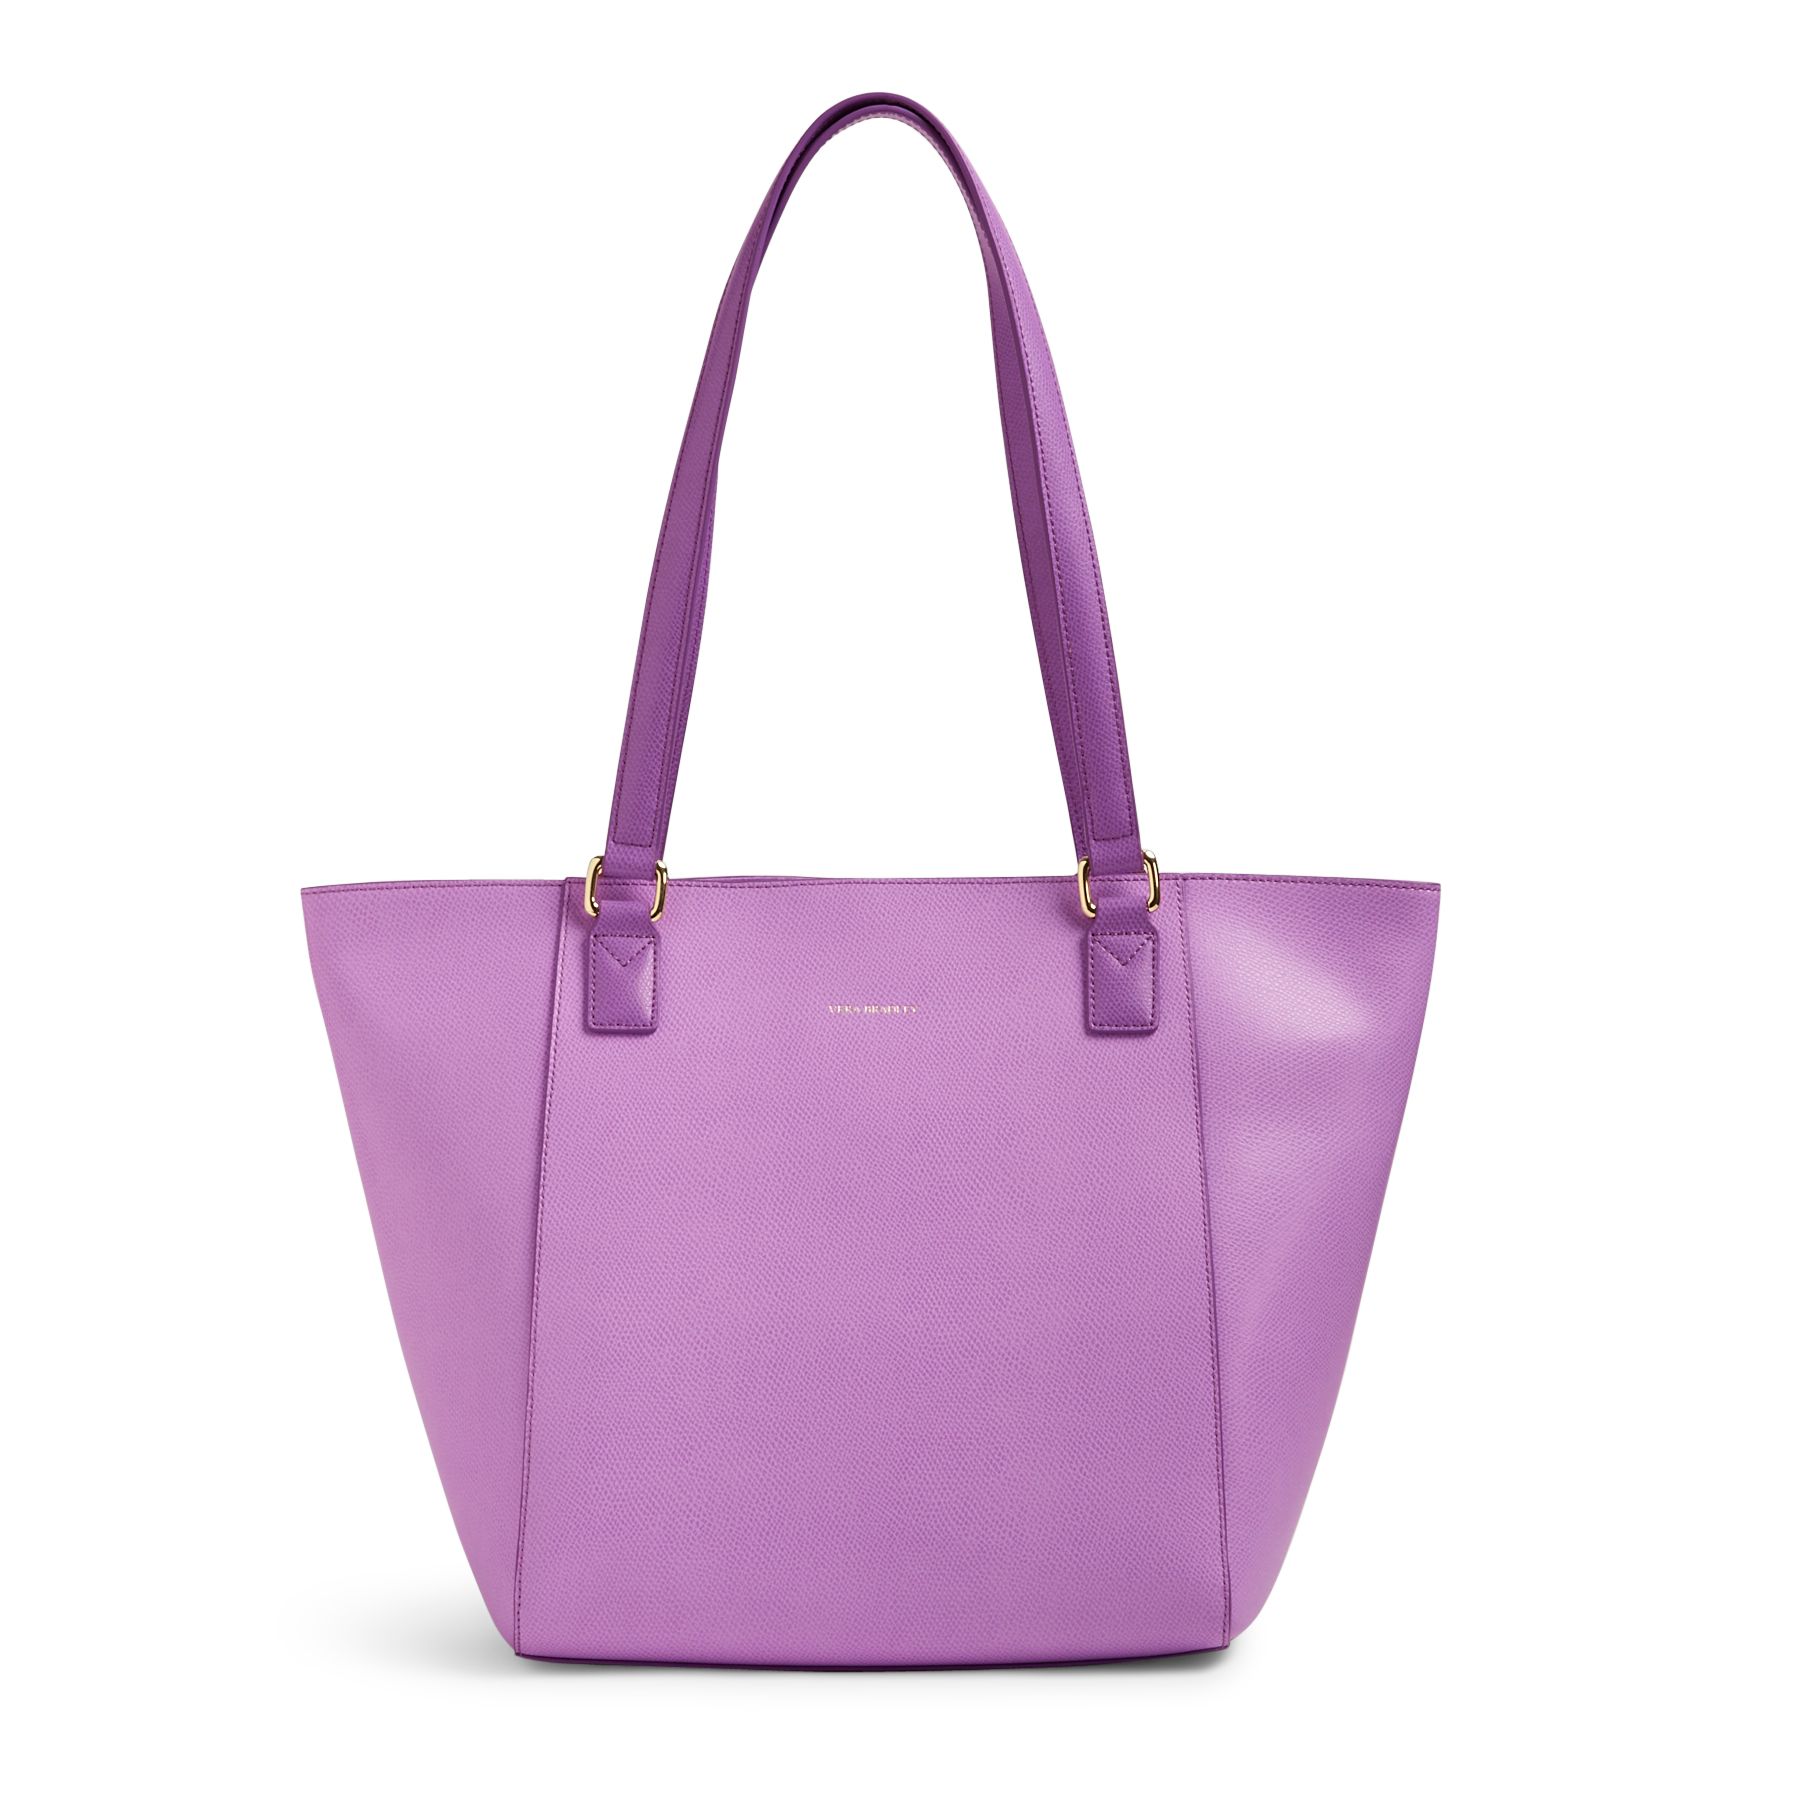 Vera Bradley Leather Small Ella Tote Bag | eBay